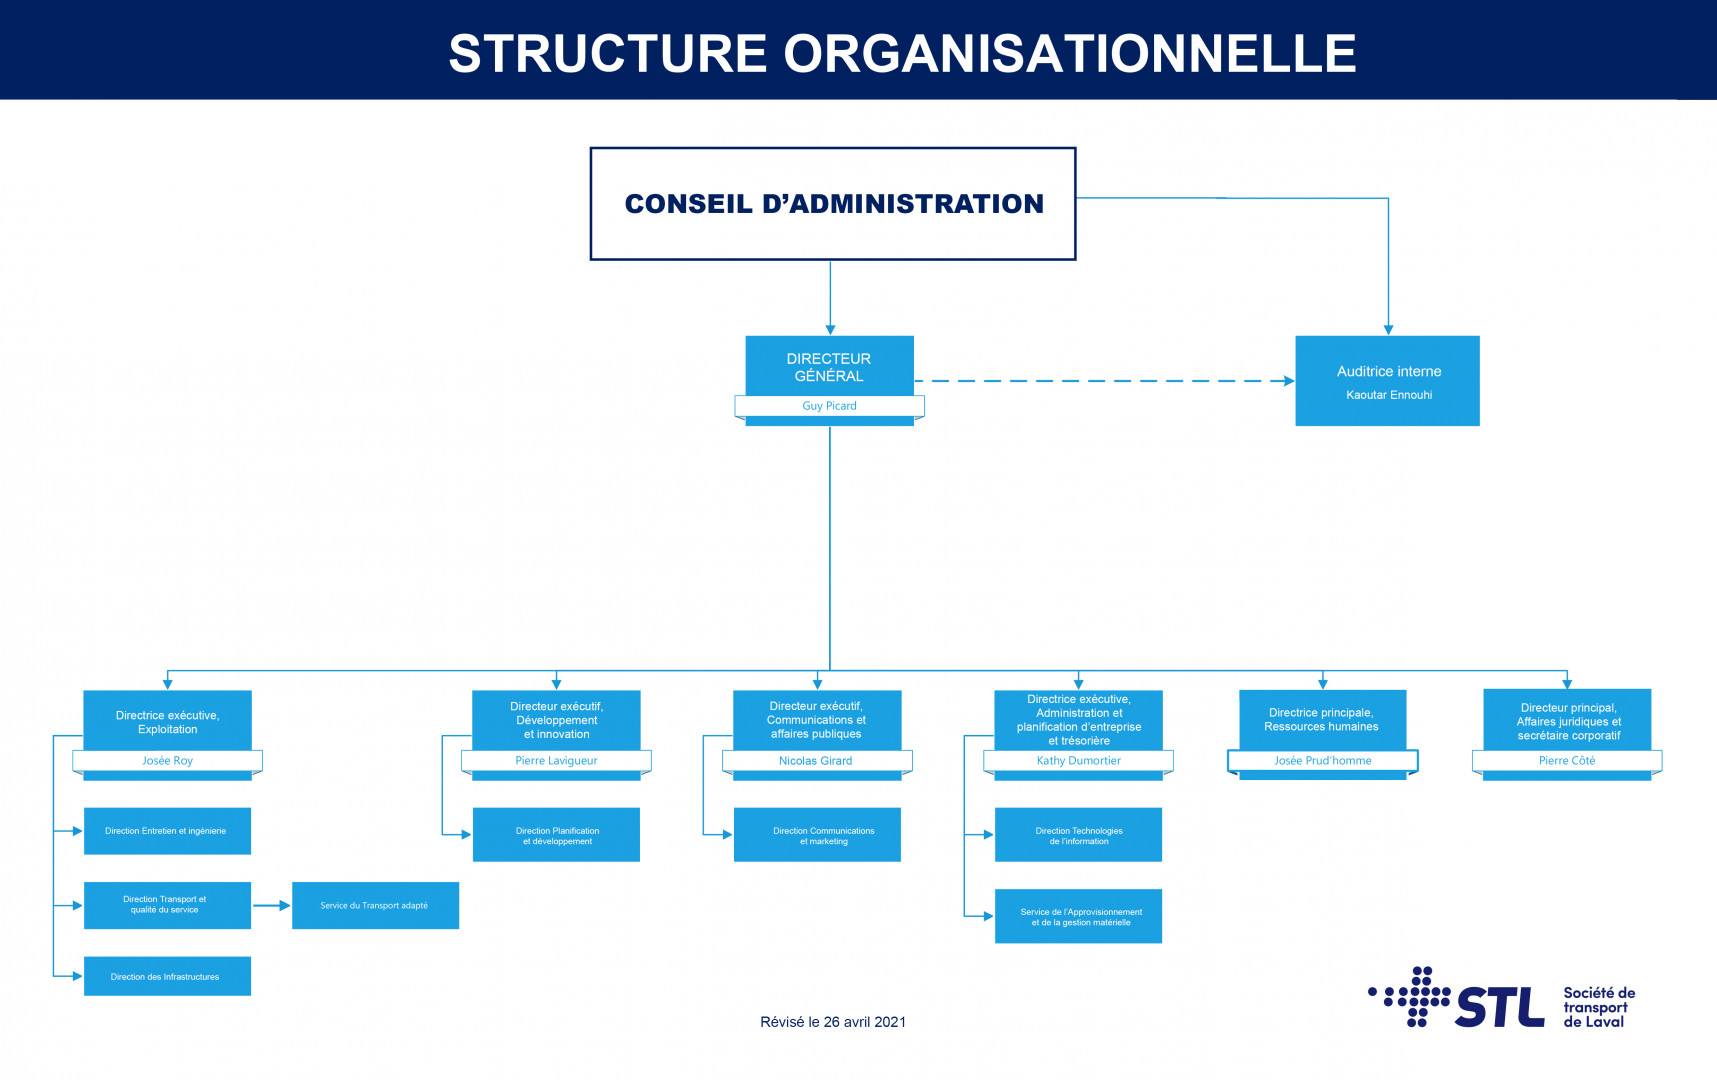 Structure organisationnelle de la STL (26 avril 2021)